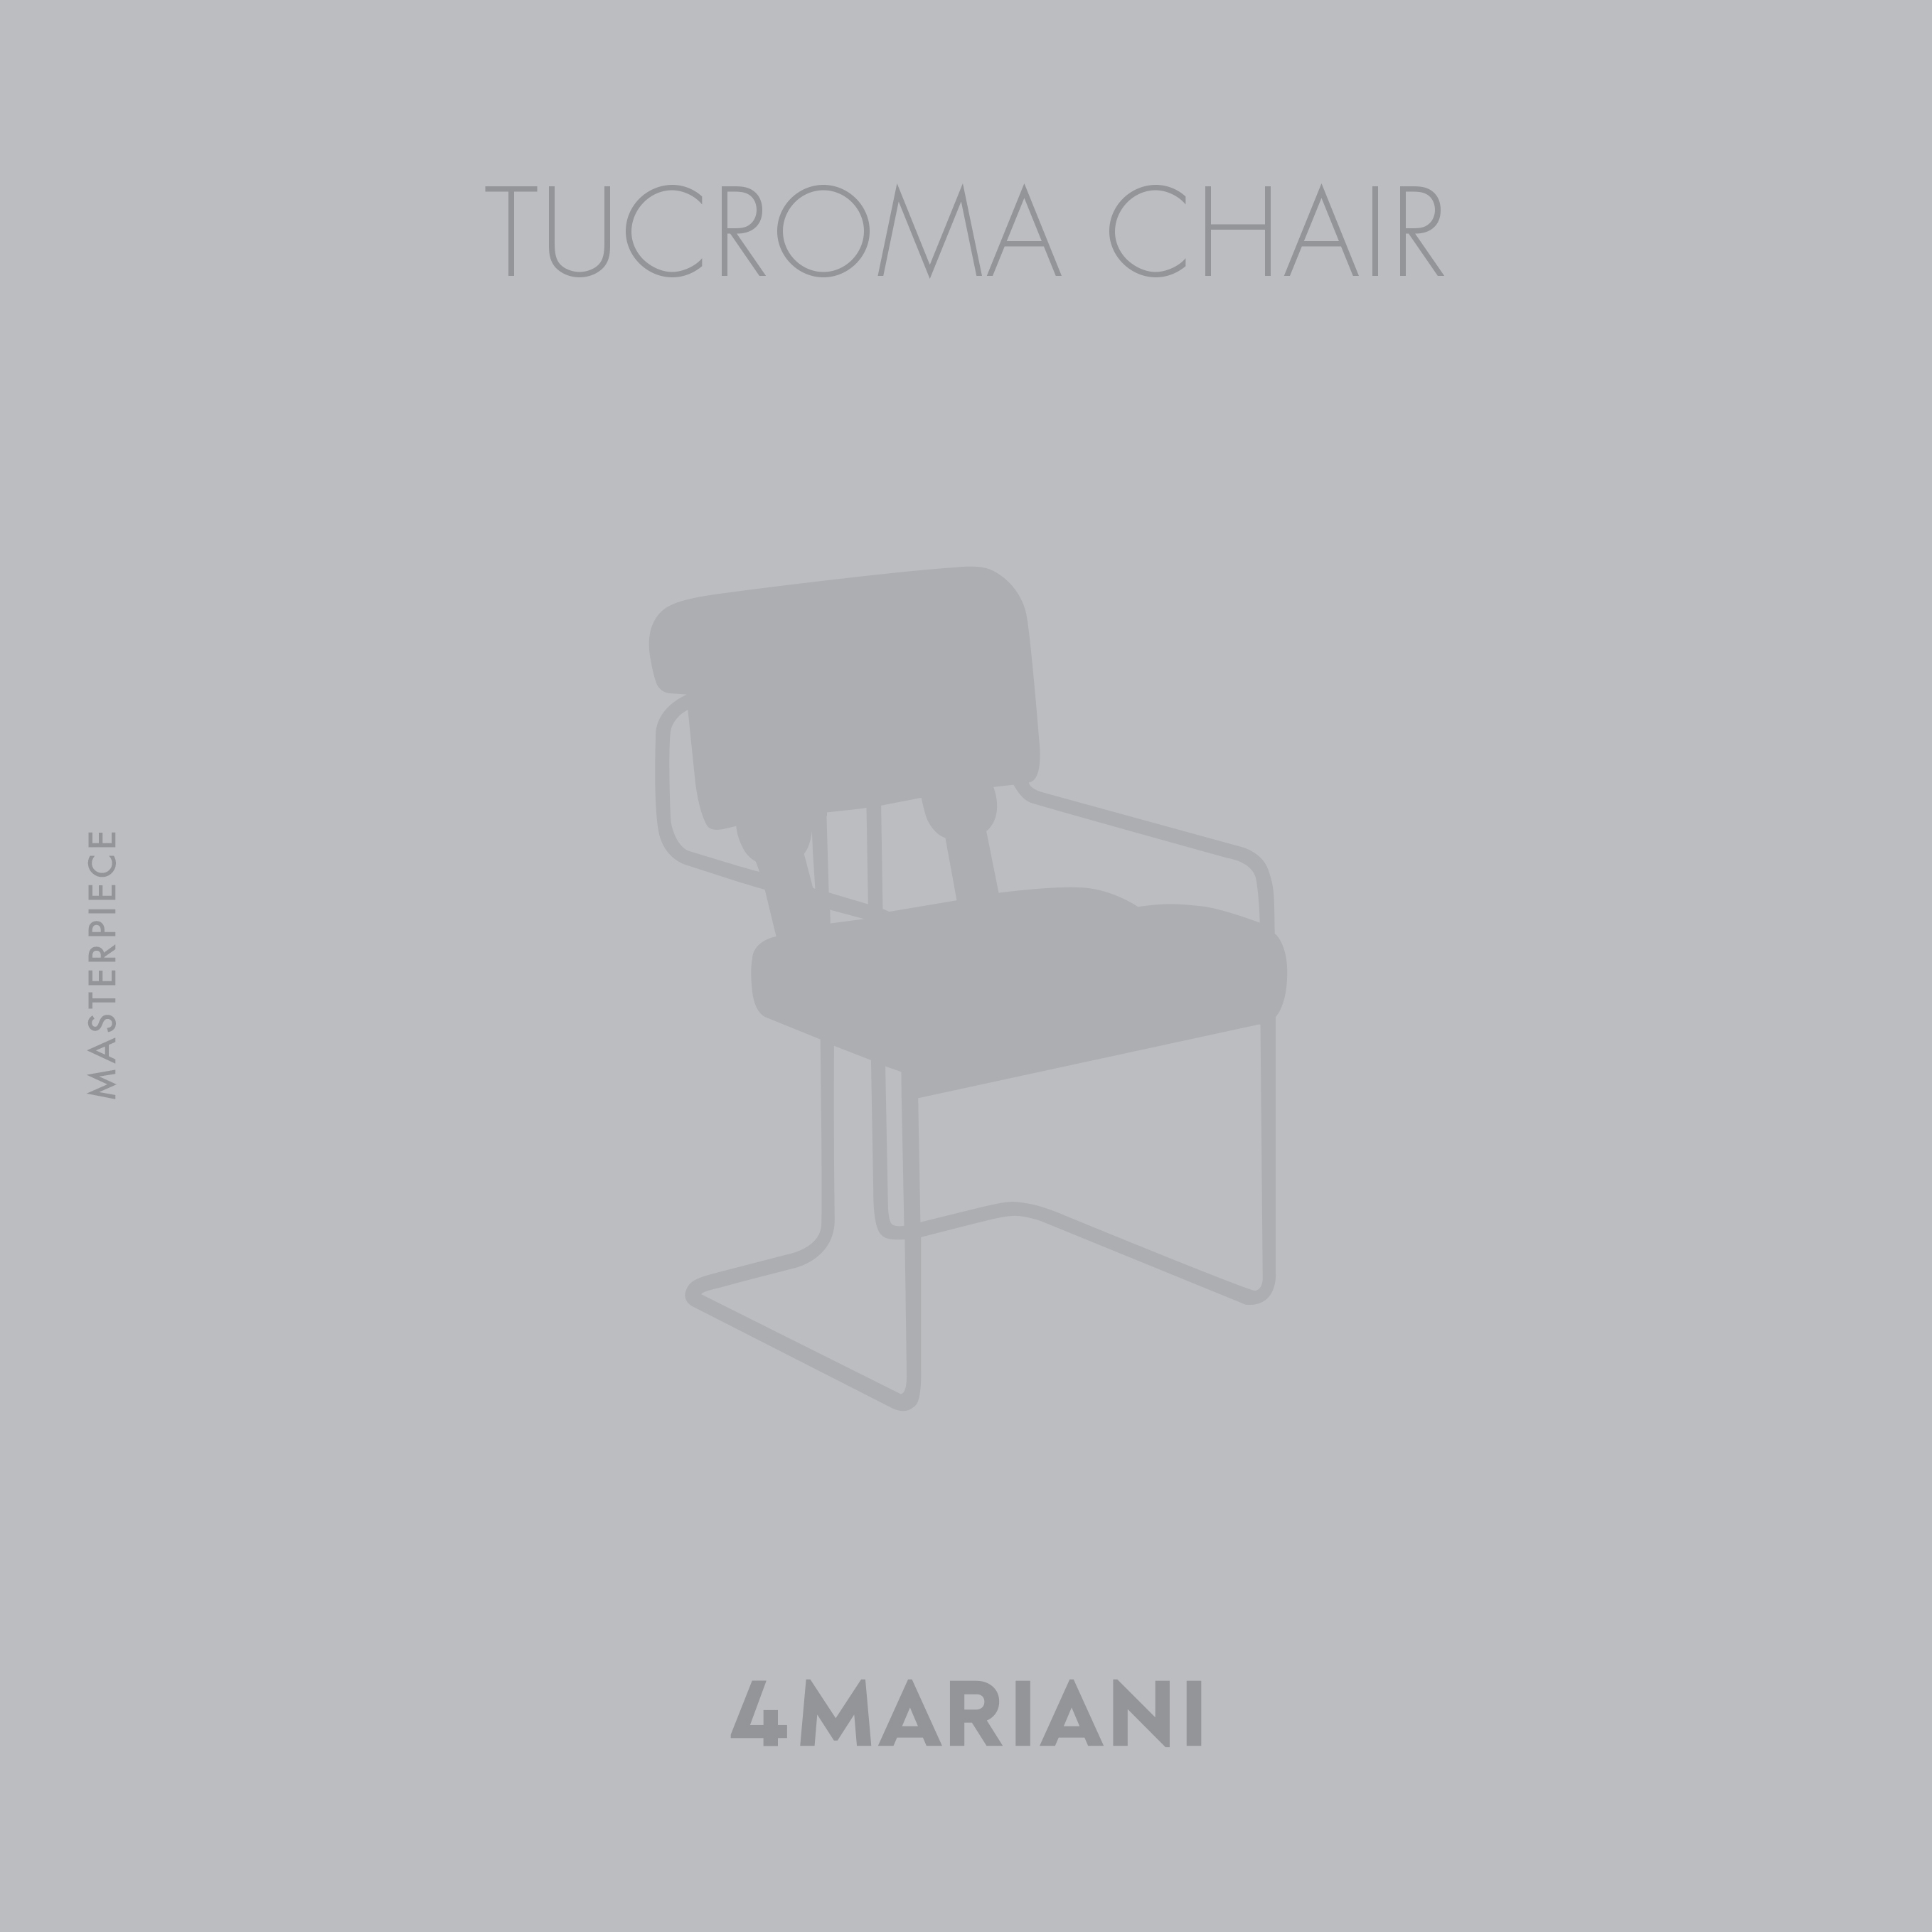 Tucroma Chair